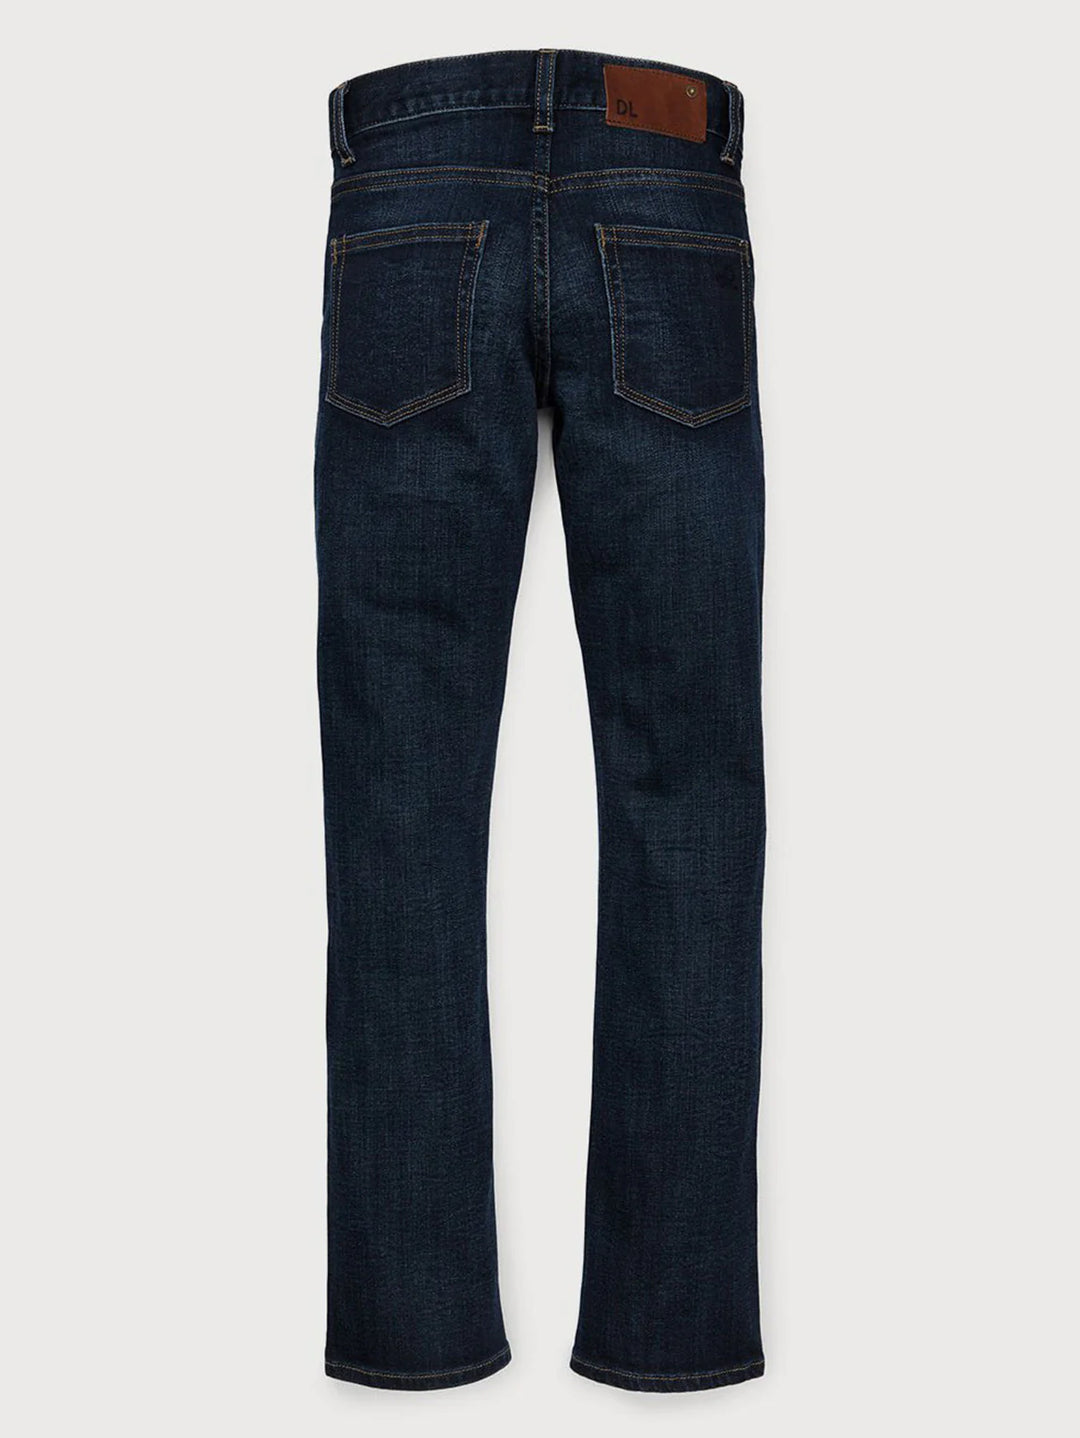 DL1961 Brady Slim Jeans - Ferret